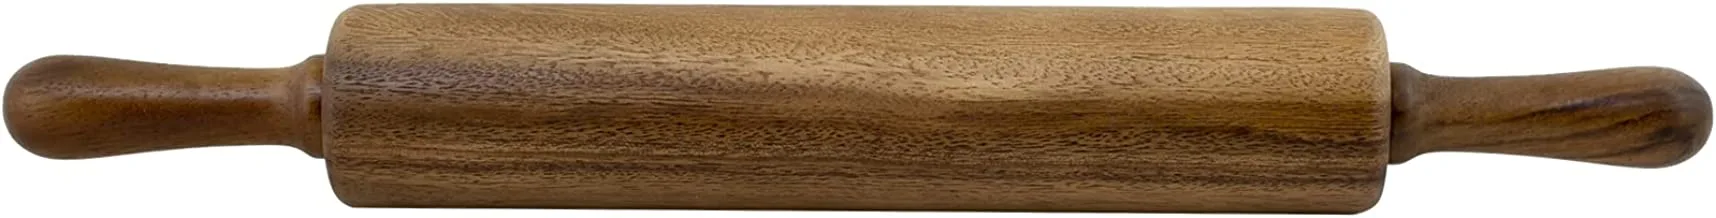 بيلي® دبوس دوار خشبي كلاسيكي مقاس 23 سم - أسطوانة عجين من خشب السنط مع مقابض لخبز المعكرونة والبيتزا والفوندان والكوكيز والخبز والنودلز - ACA-201-9